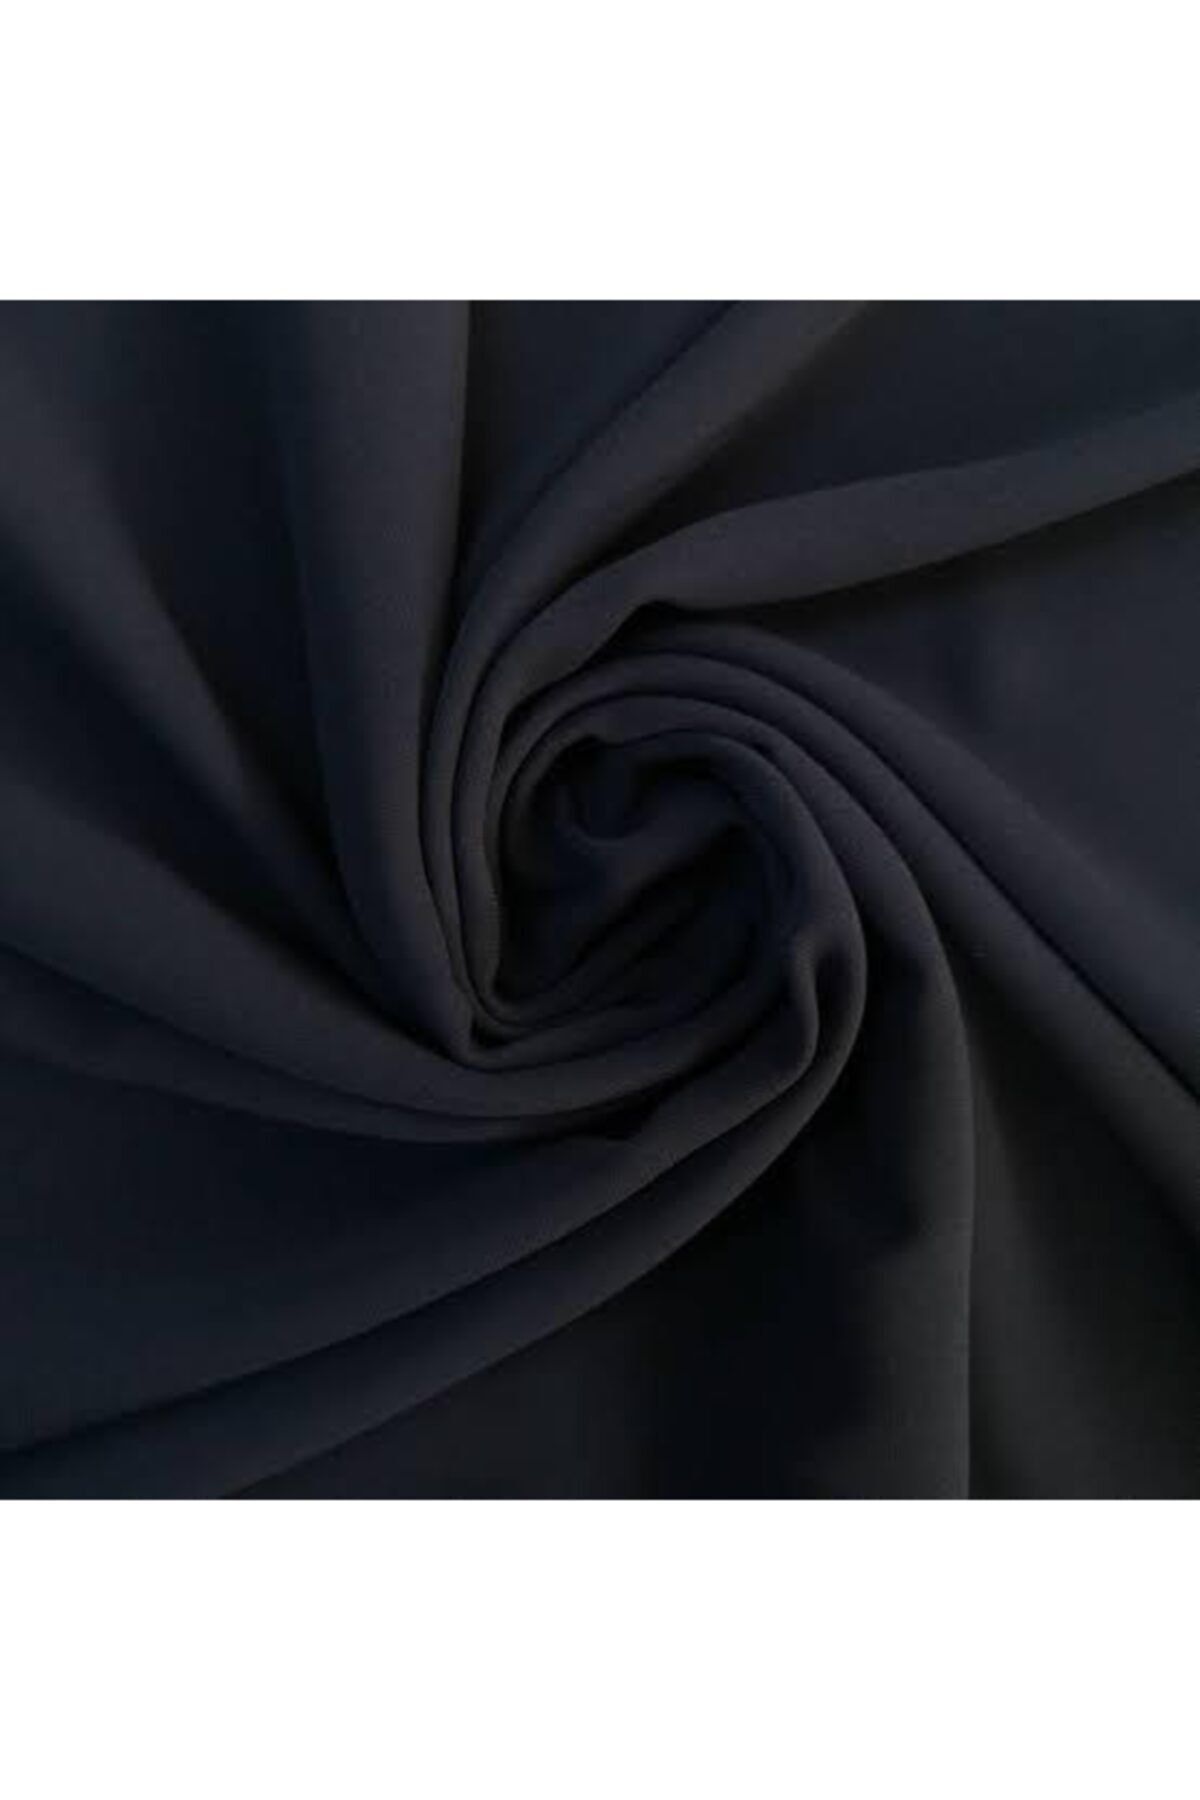 Nadirzade Kumaşçılık Likralı Elbiselik Italyan Double Krep Kumaş- Siyah (150 CM ENİNDE)